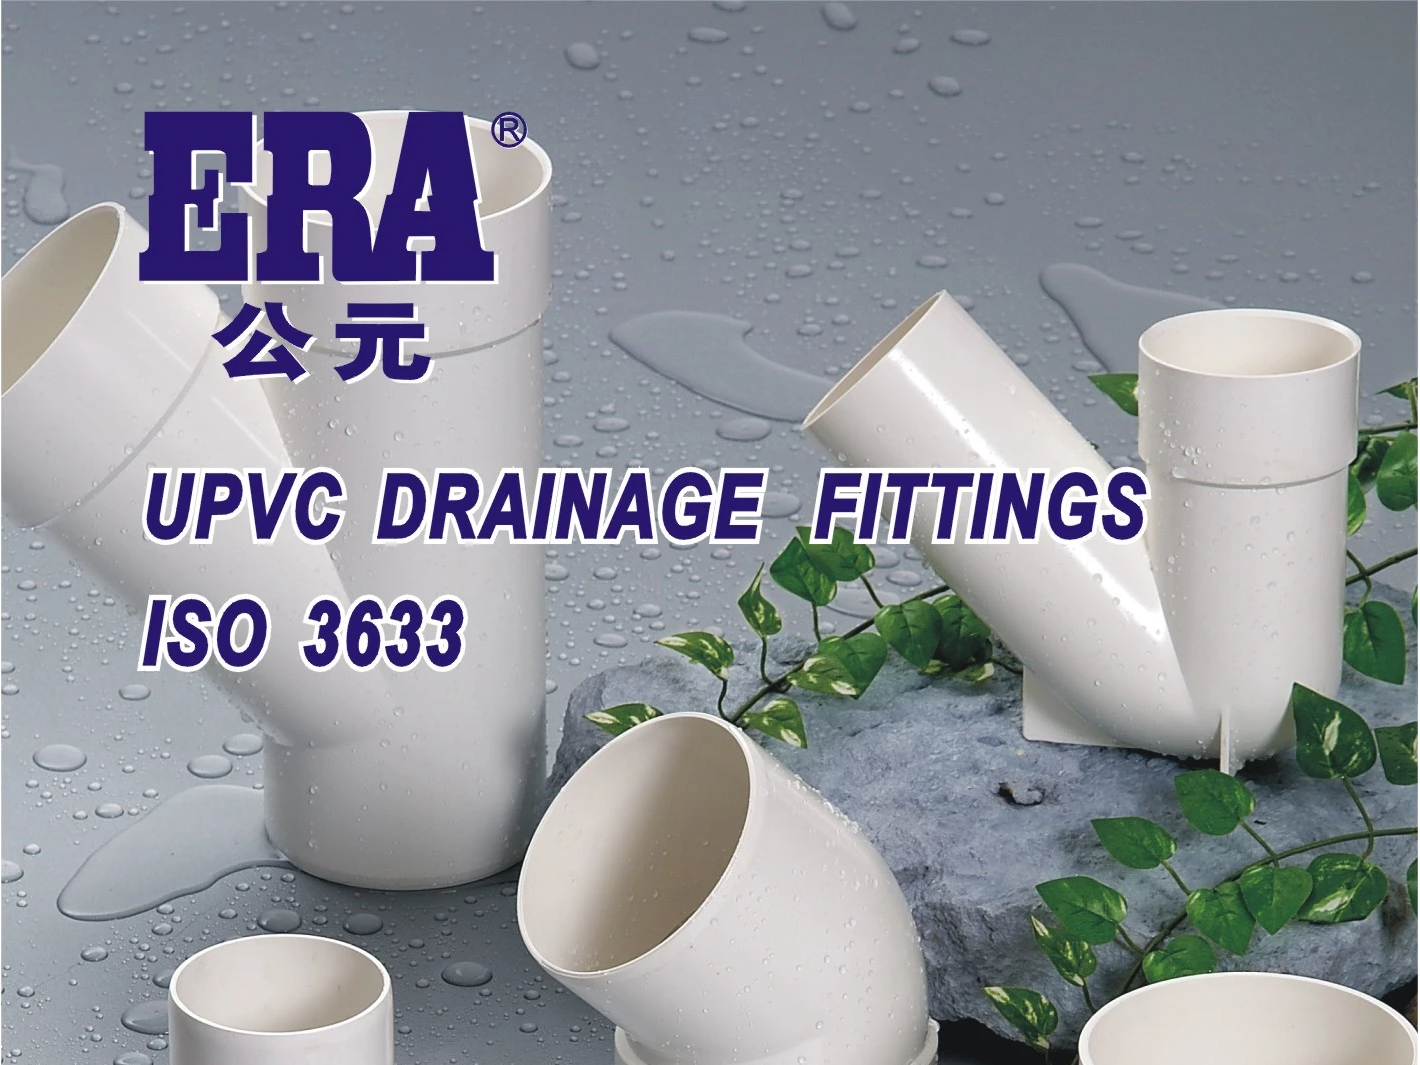 يتم تقديم تفاصيل تركيب أنابيب الصرف الصحي PVC-U في أربع نقاط